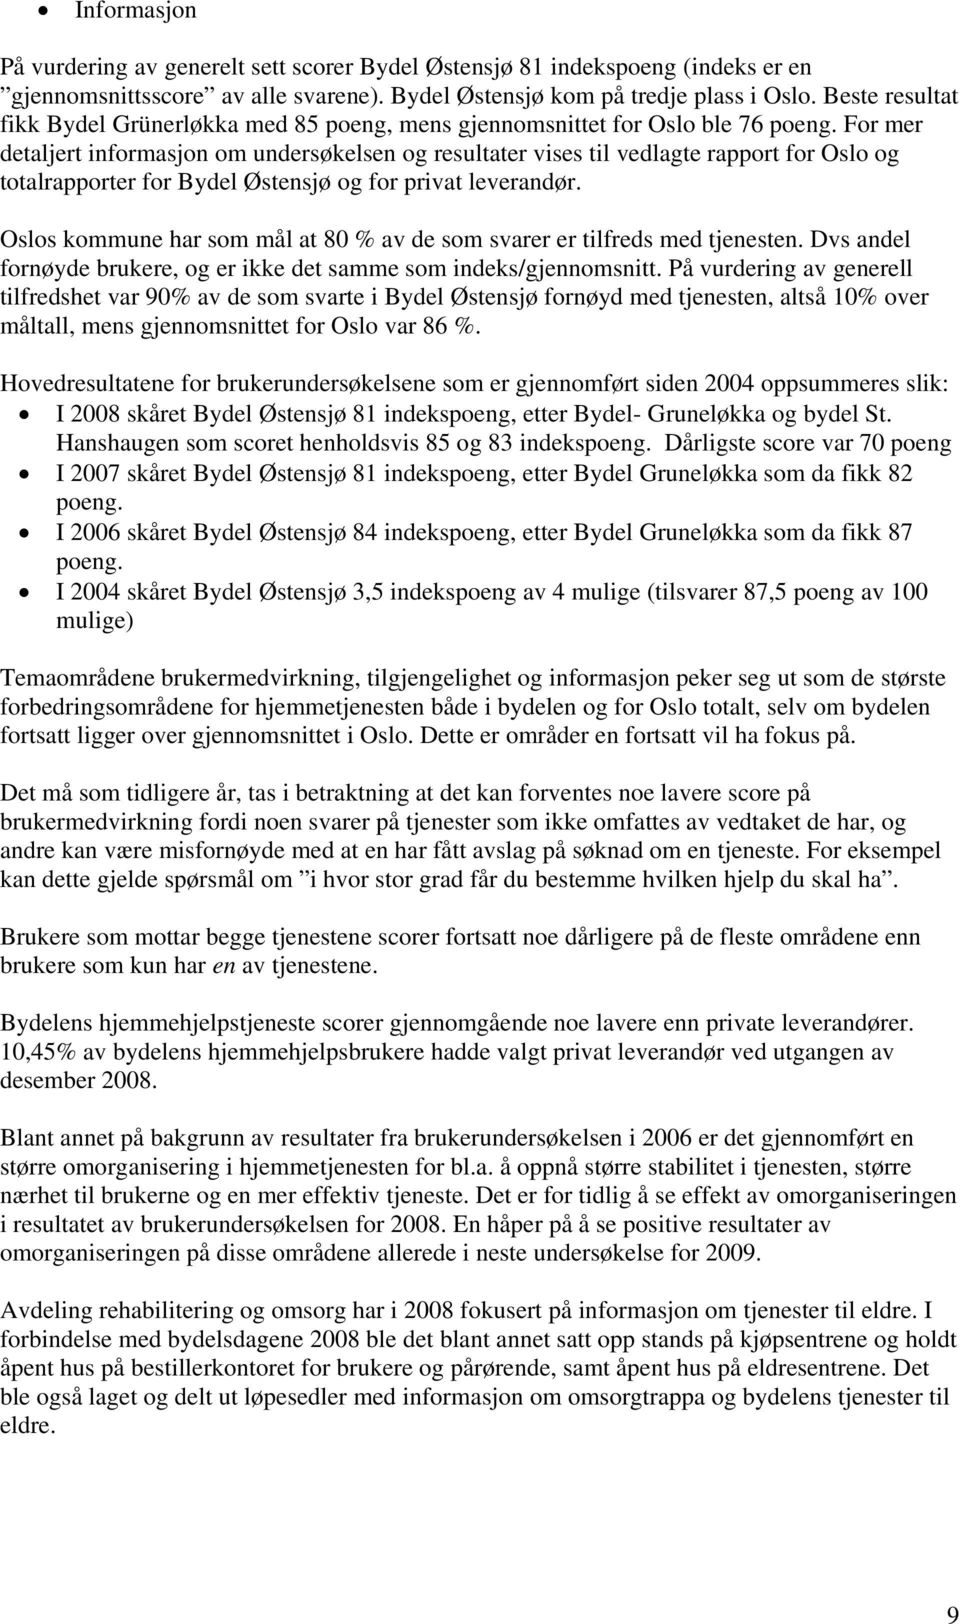 For mer detaljert informasjon om undersøkelsen og resultater vises til vedlagte rapport for Oslo og totalrapporter for Bydel Østensjø og for privat leverandør.